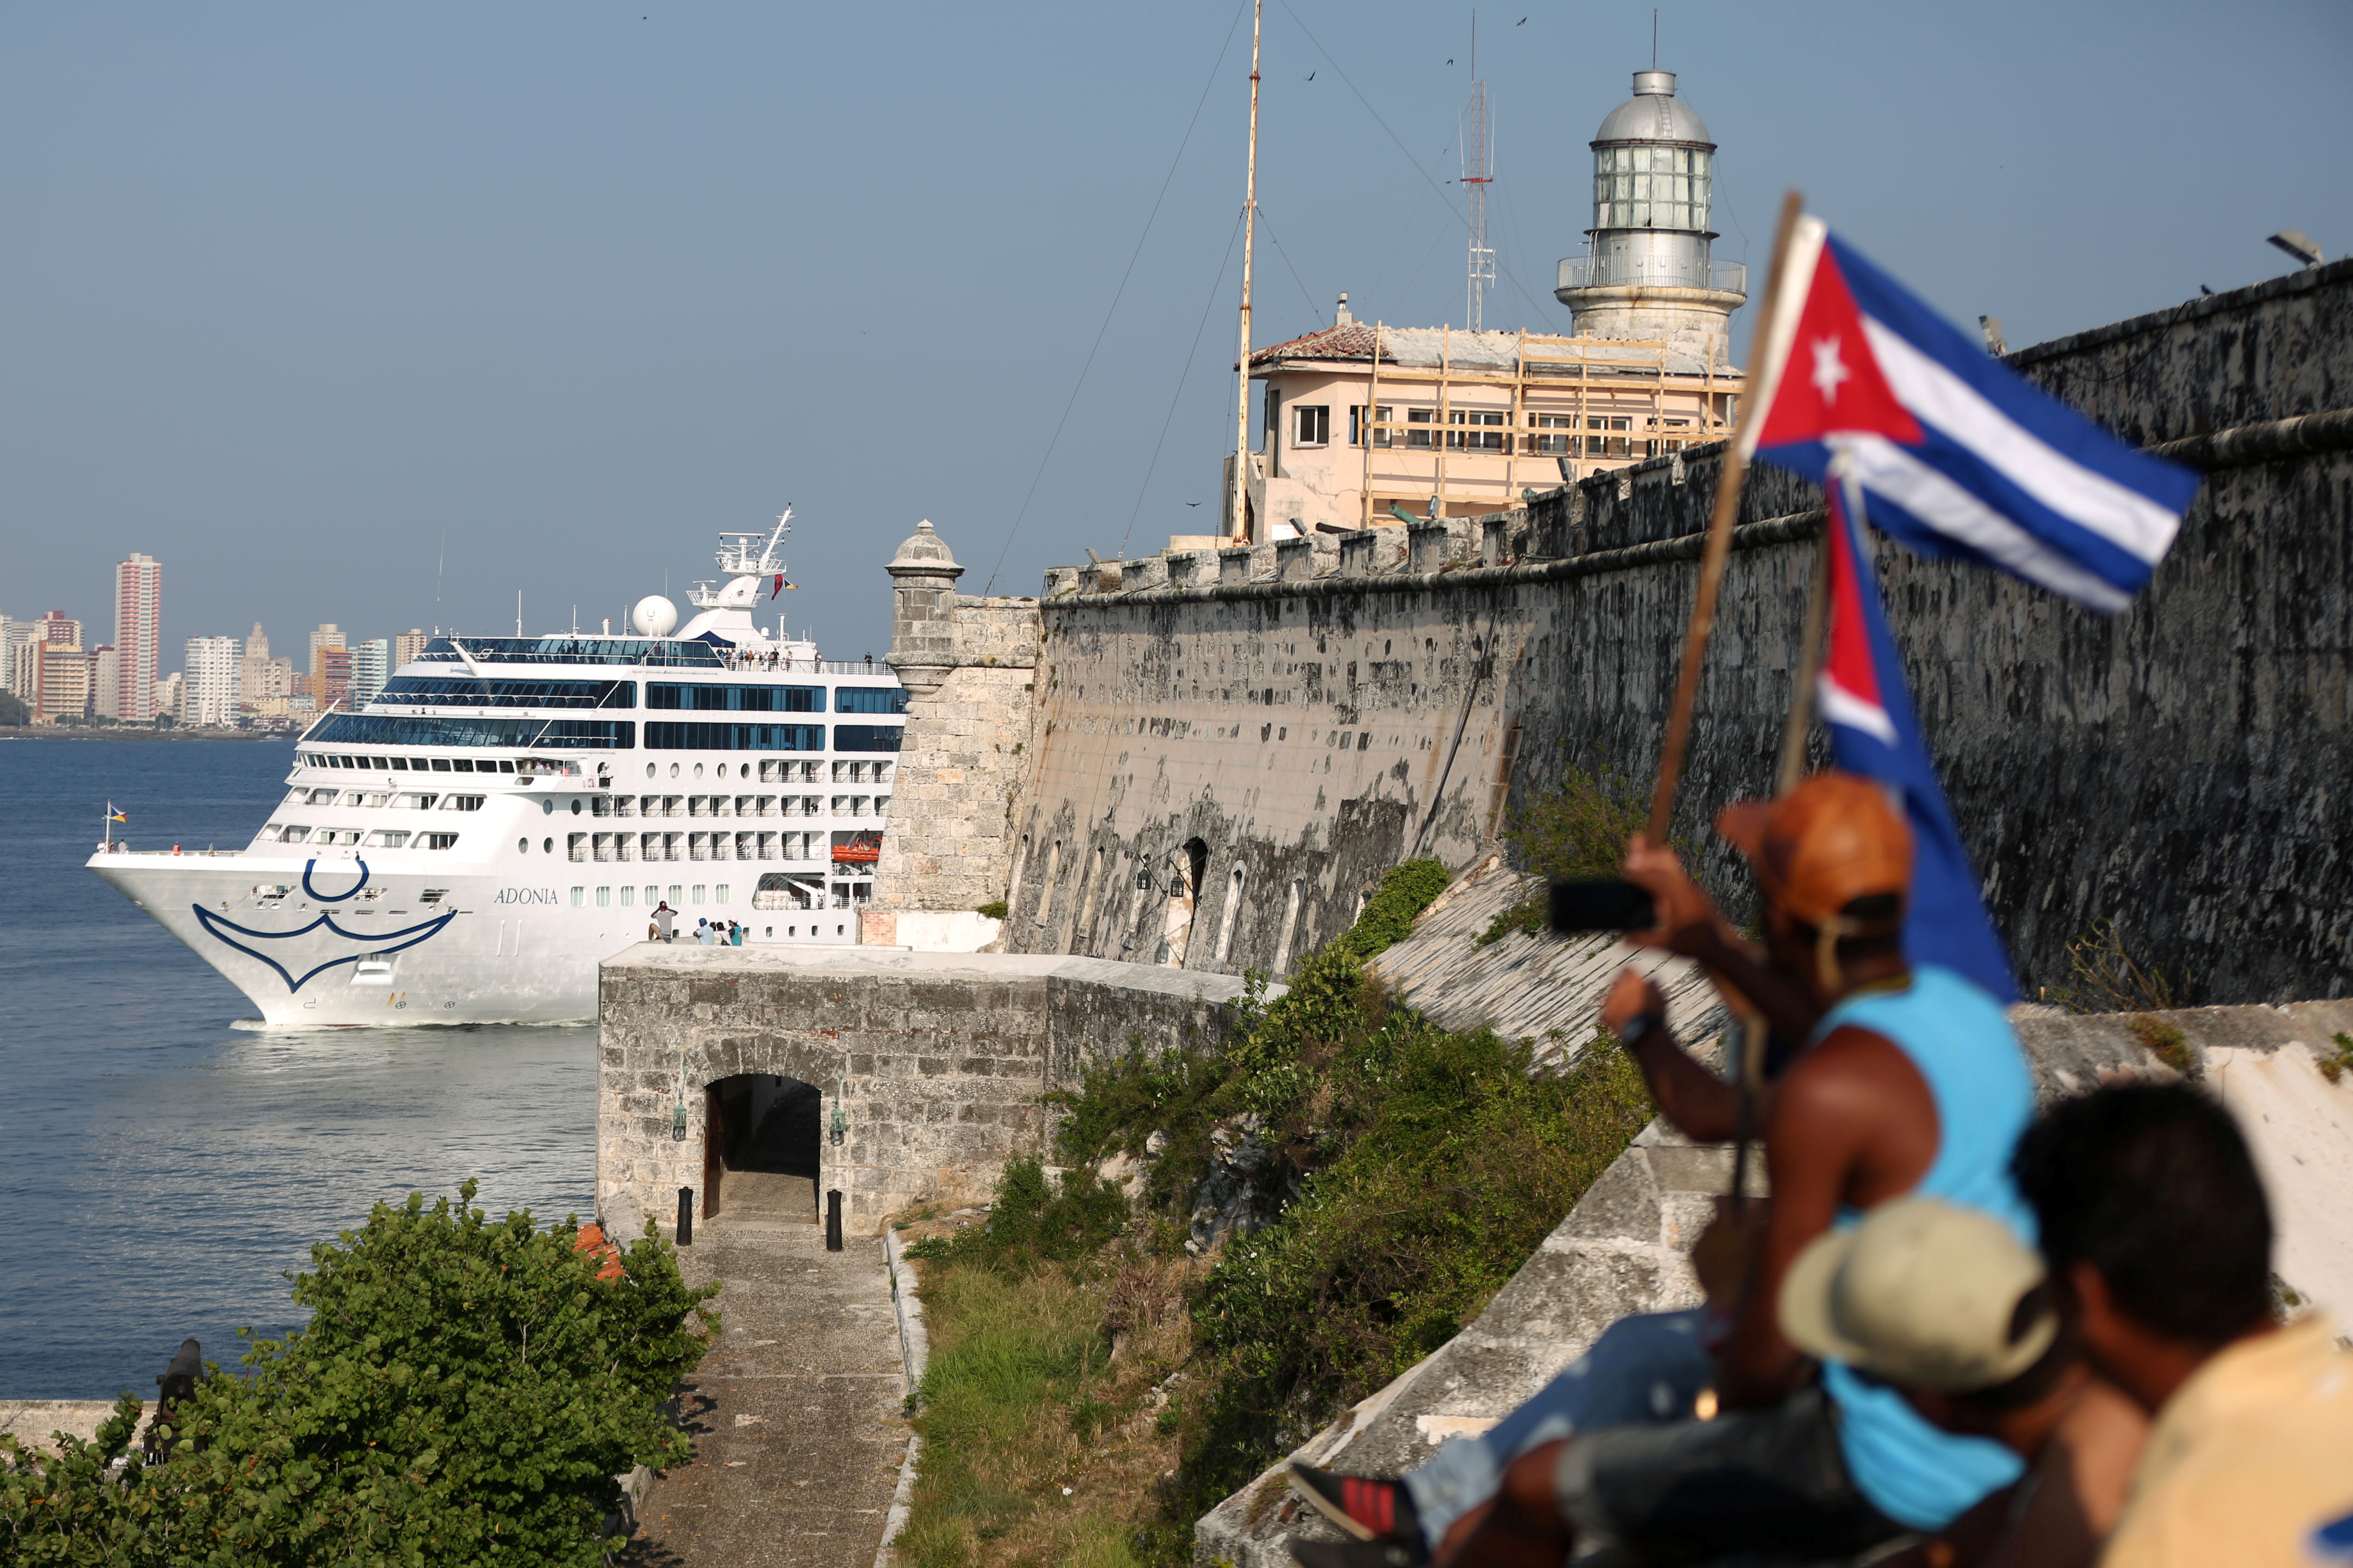 El turismo a Cuba se desploma tras endurecimiento de las restricciones de viajes de Trump